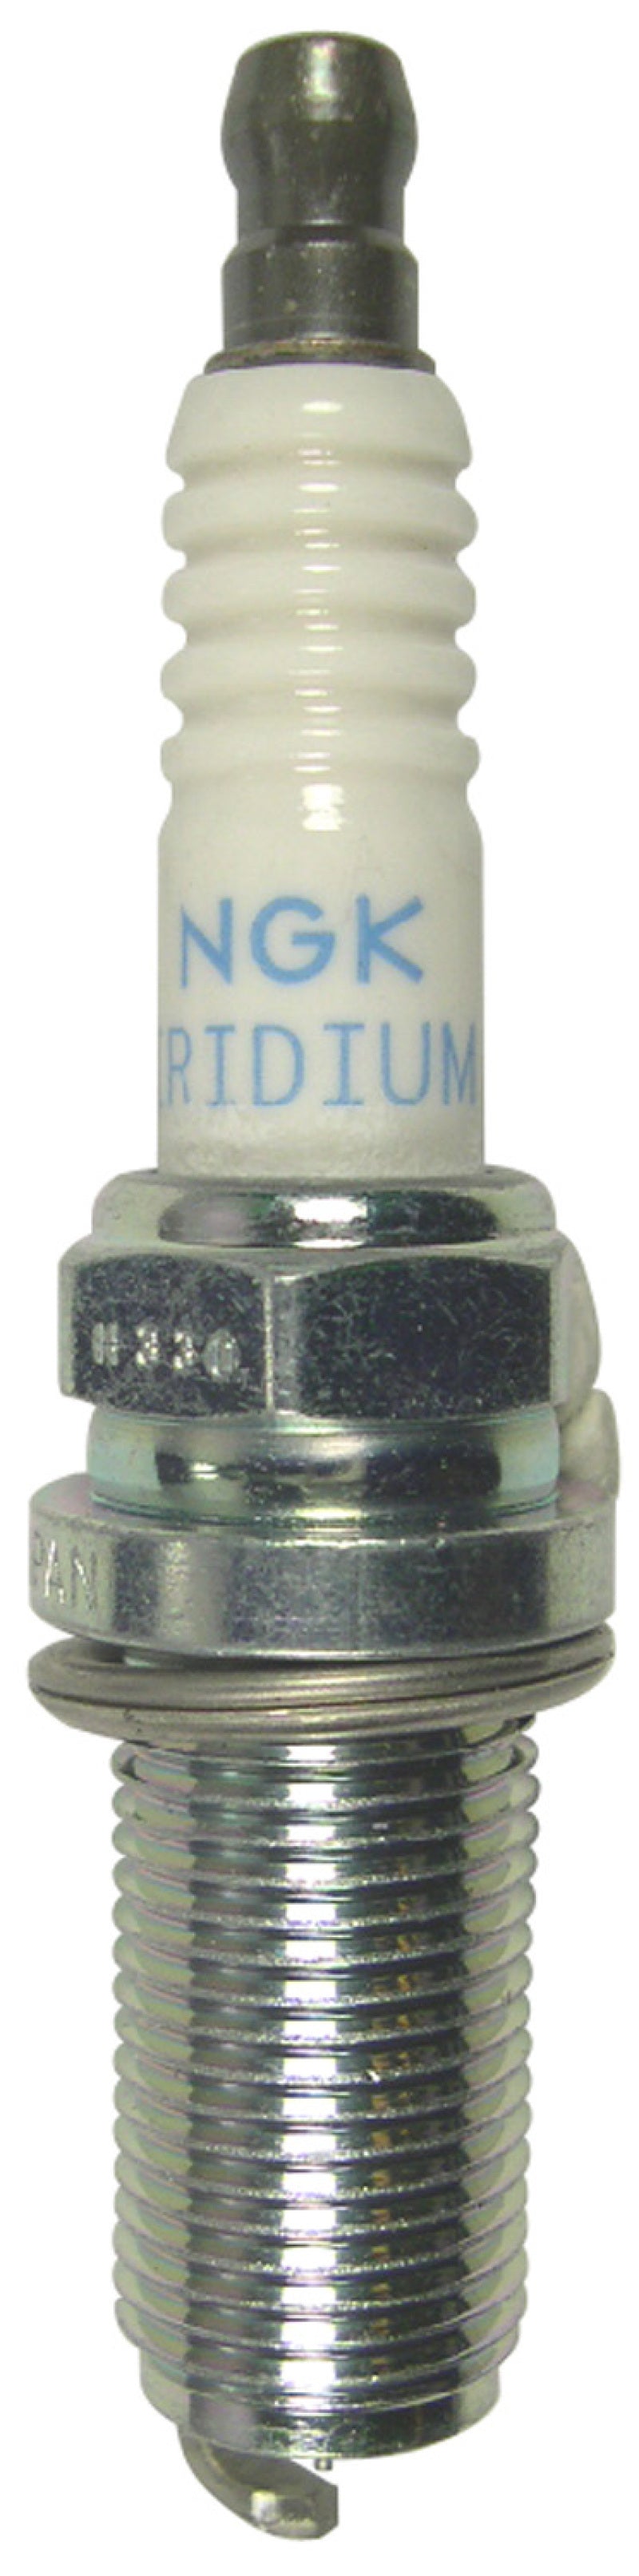 NGK Iridium Racing Spark Plug Box of 4 (R7437-9) -  Shop now at Performance Car Parts